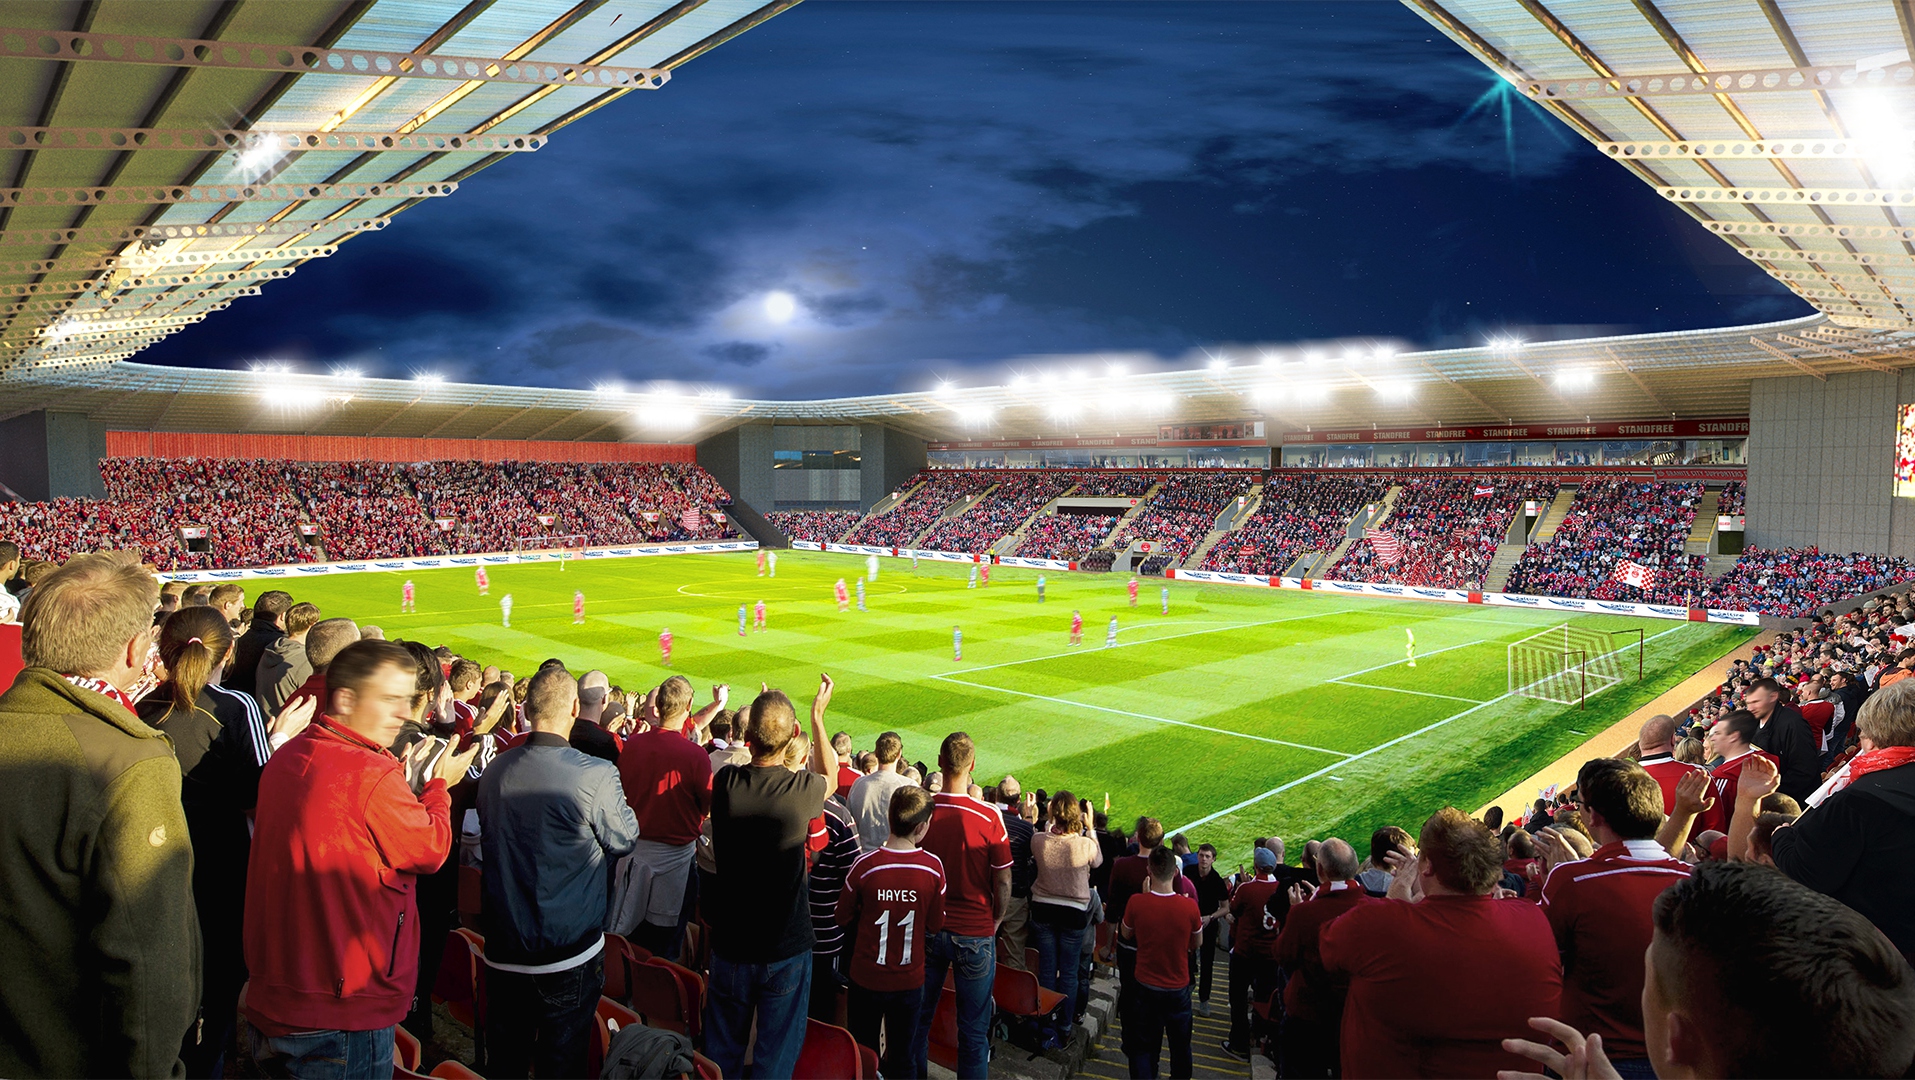 Aberdeen FC achieves £1.1m profit amidst strategic financial turnaround